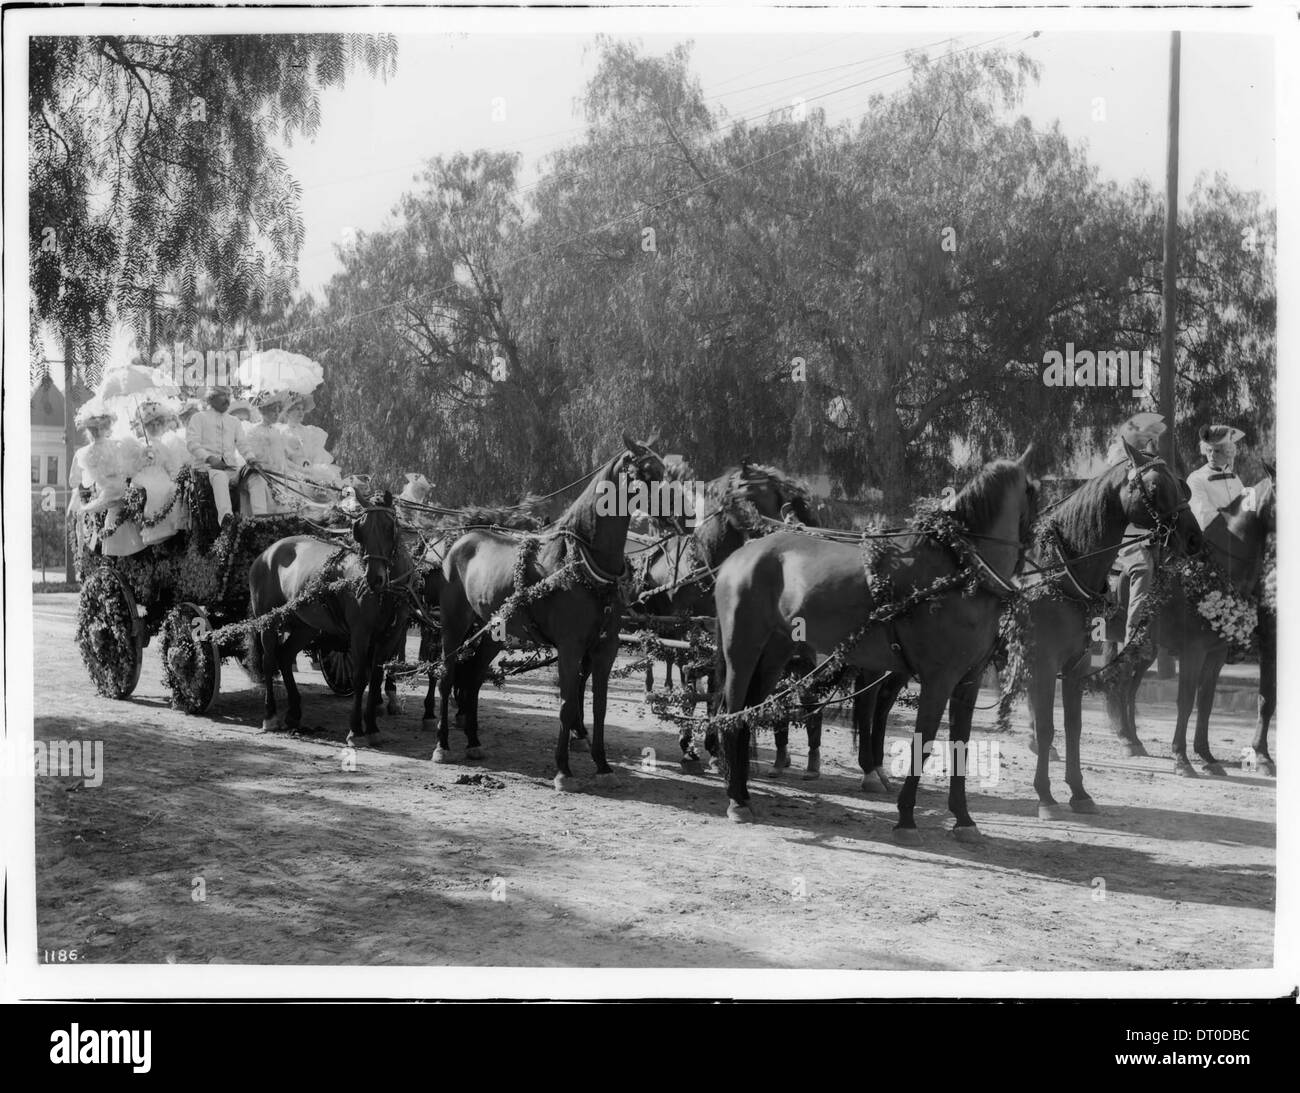 Dekorierte Kutsche, "Tallyho", von sechs schwarze Pferde während des Turniers von der Rosen-Parade, ca.1895-1899 Stockfoto